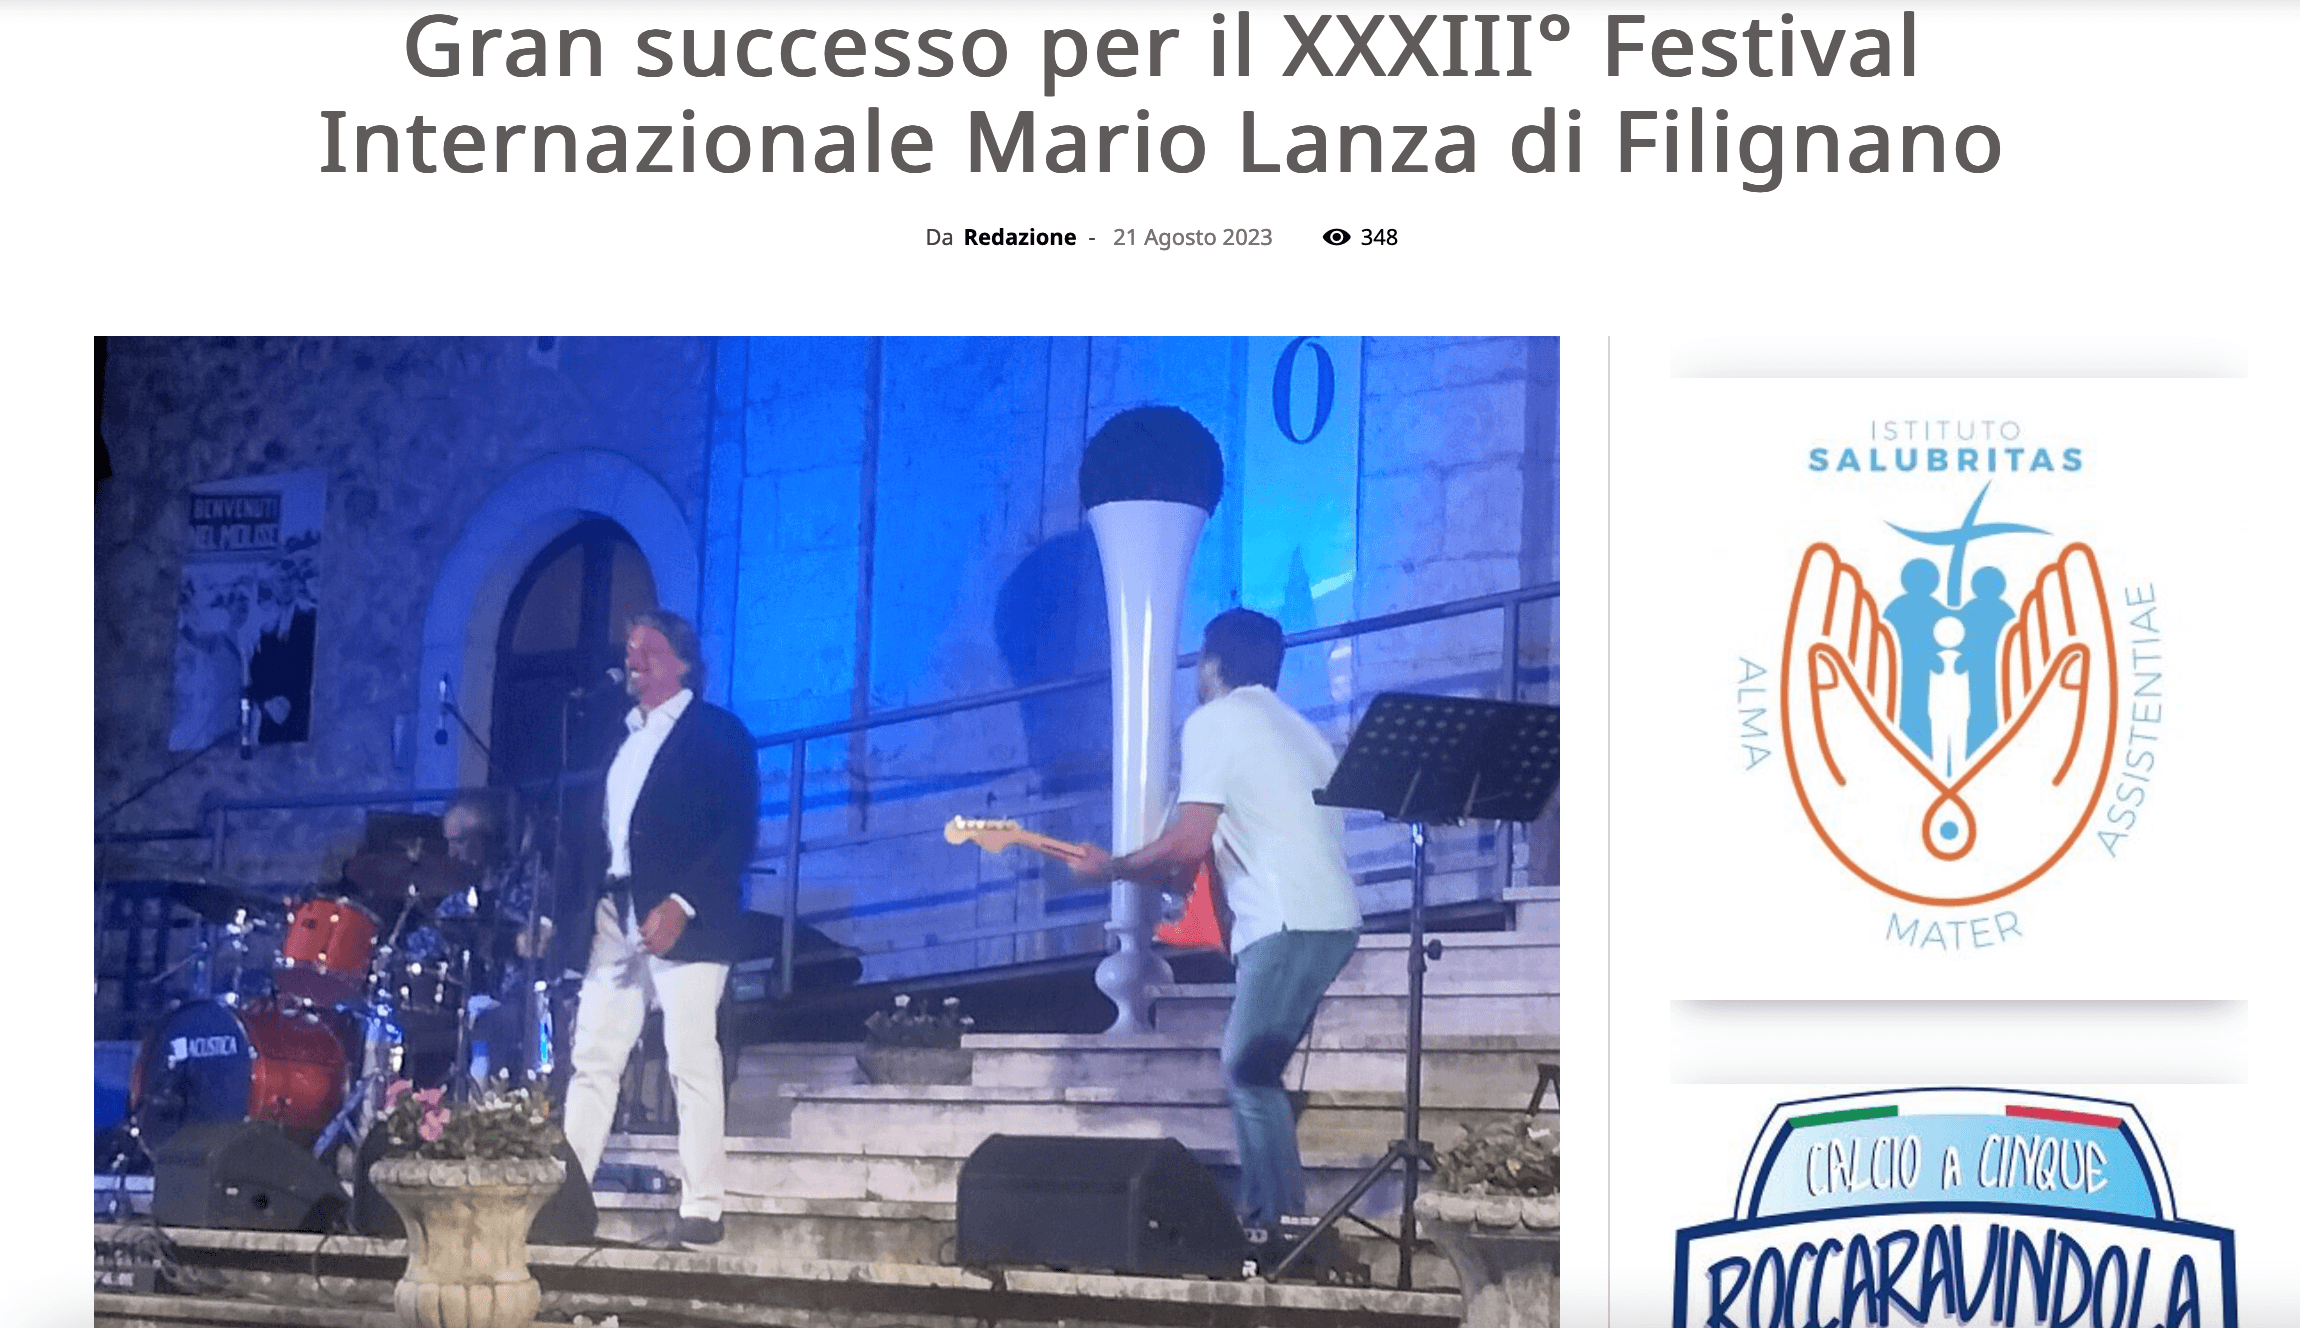 Gran successo per il XXXIII° Festival Internazionale Mario Lanza di Filignano